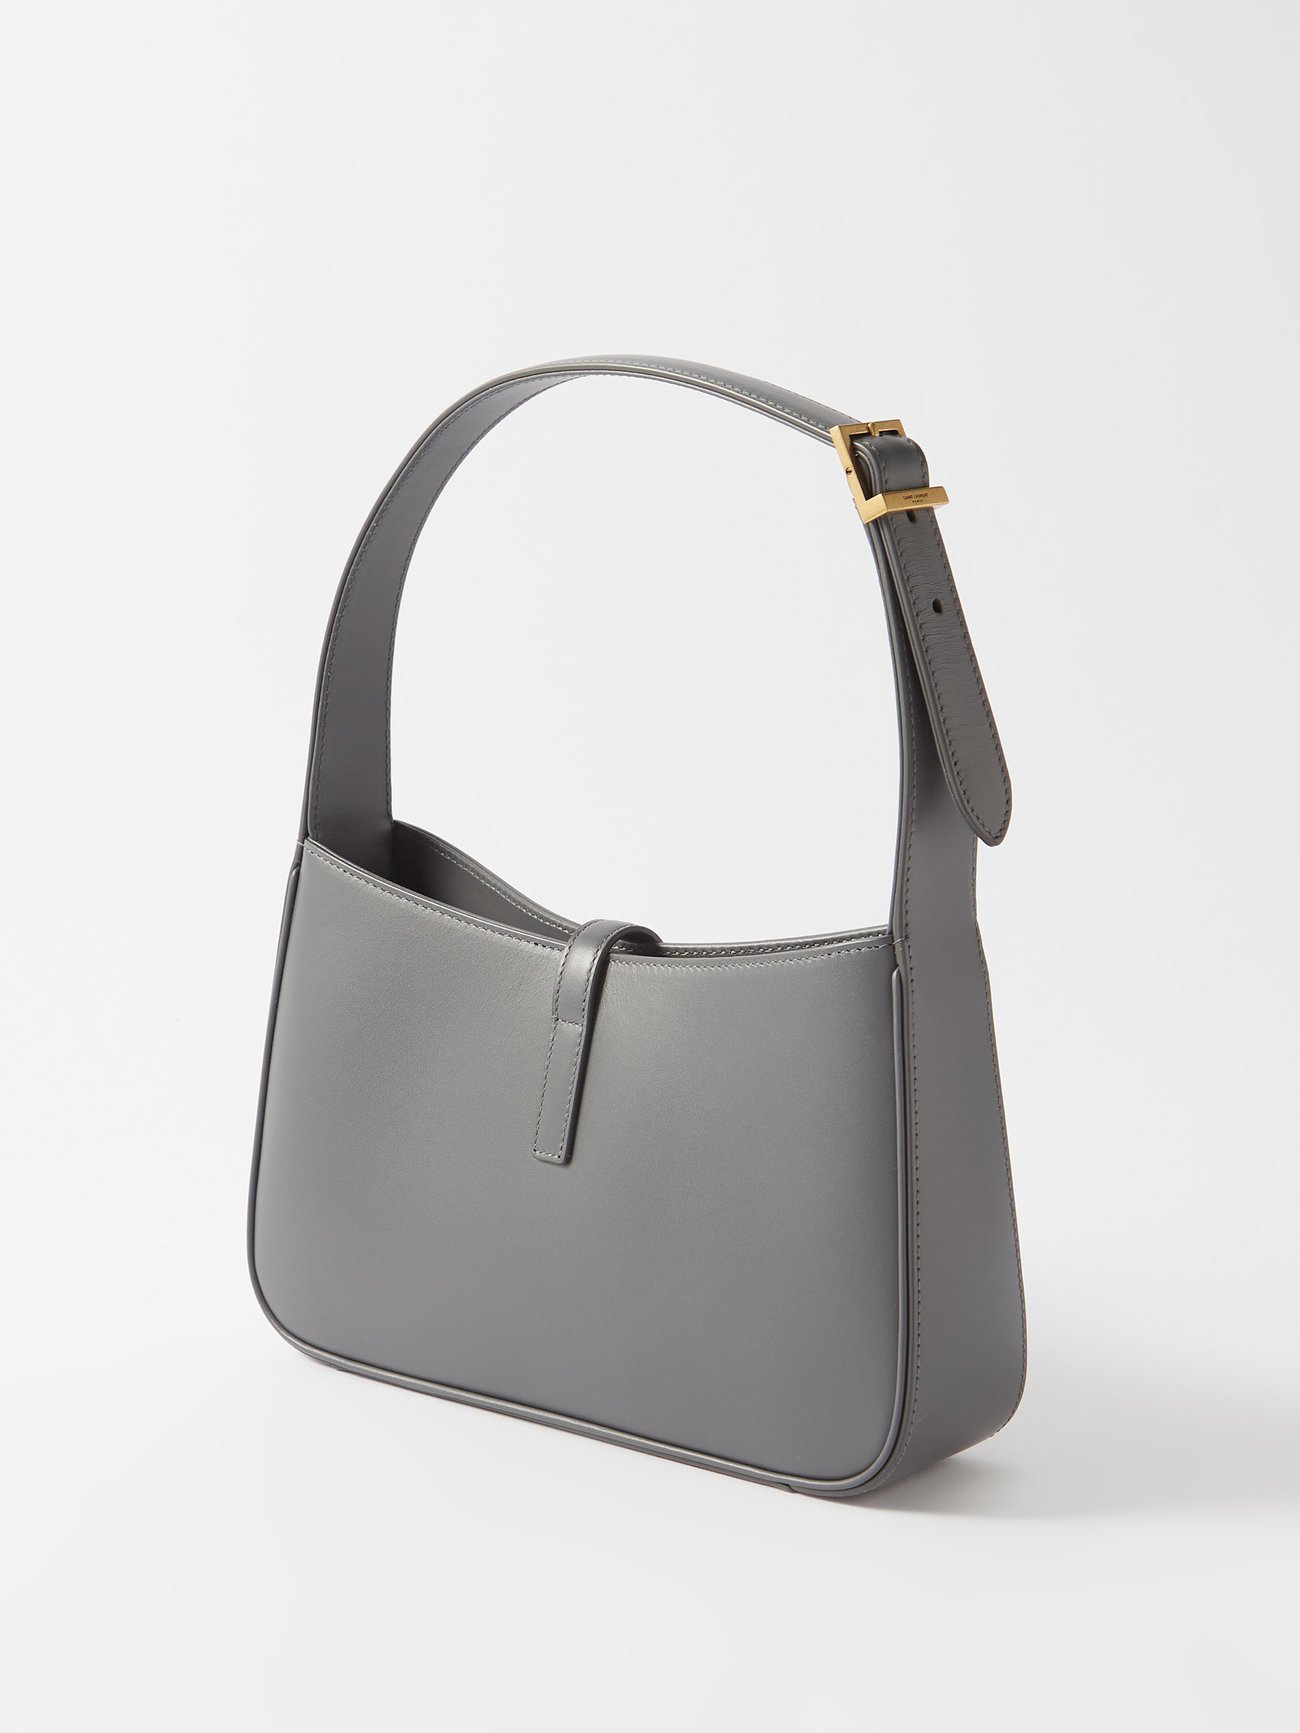 Grey Le 5 à 7 leather shoulder bag, Saint Laurent